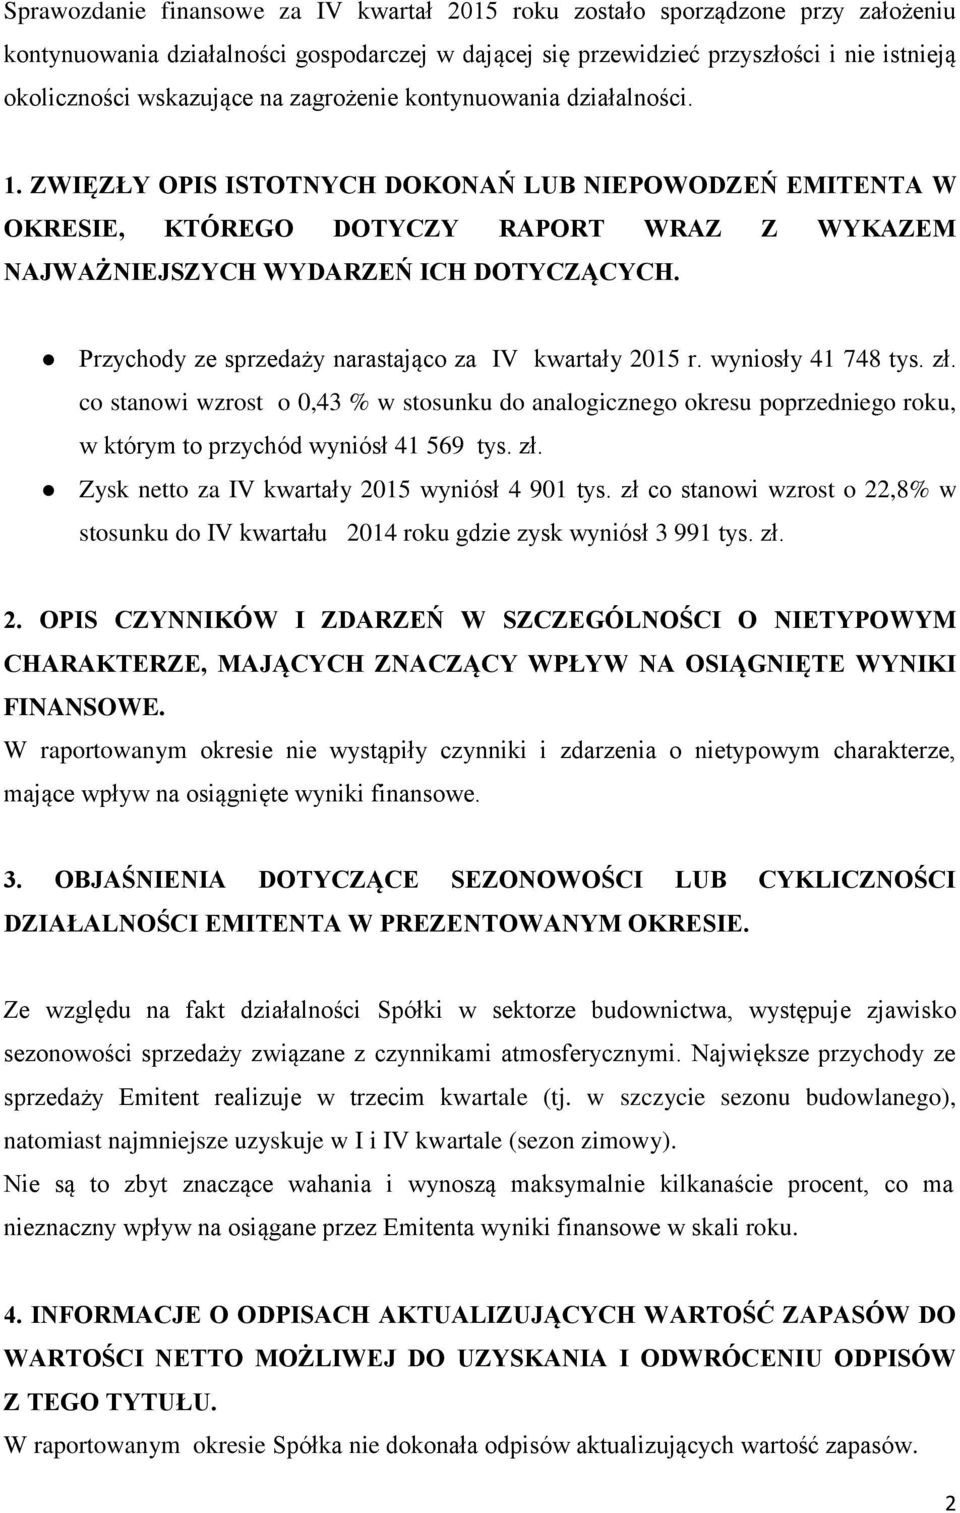 Przychody ze sprzedaży narastająco za IV kwartały 2015 r. wyniosły 41 748 tys. zł.